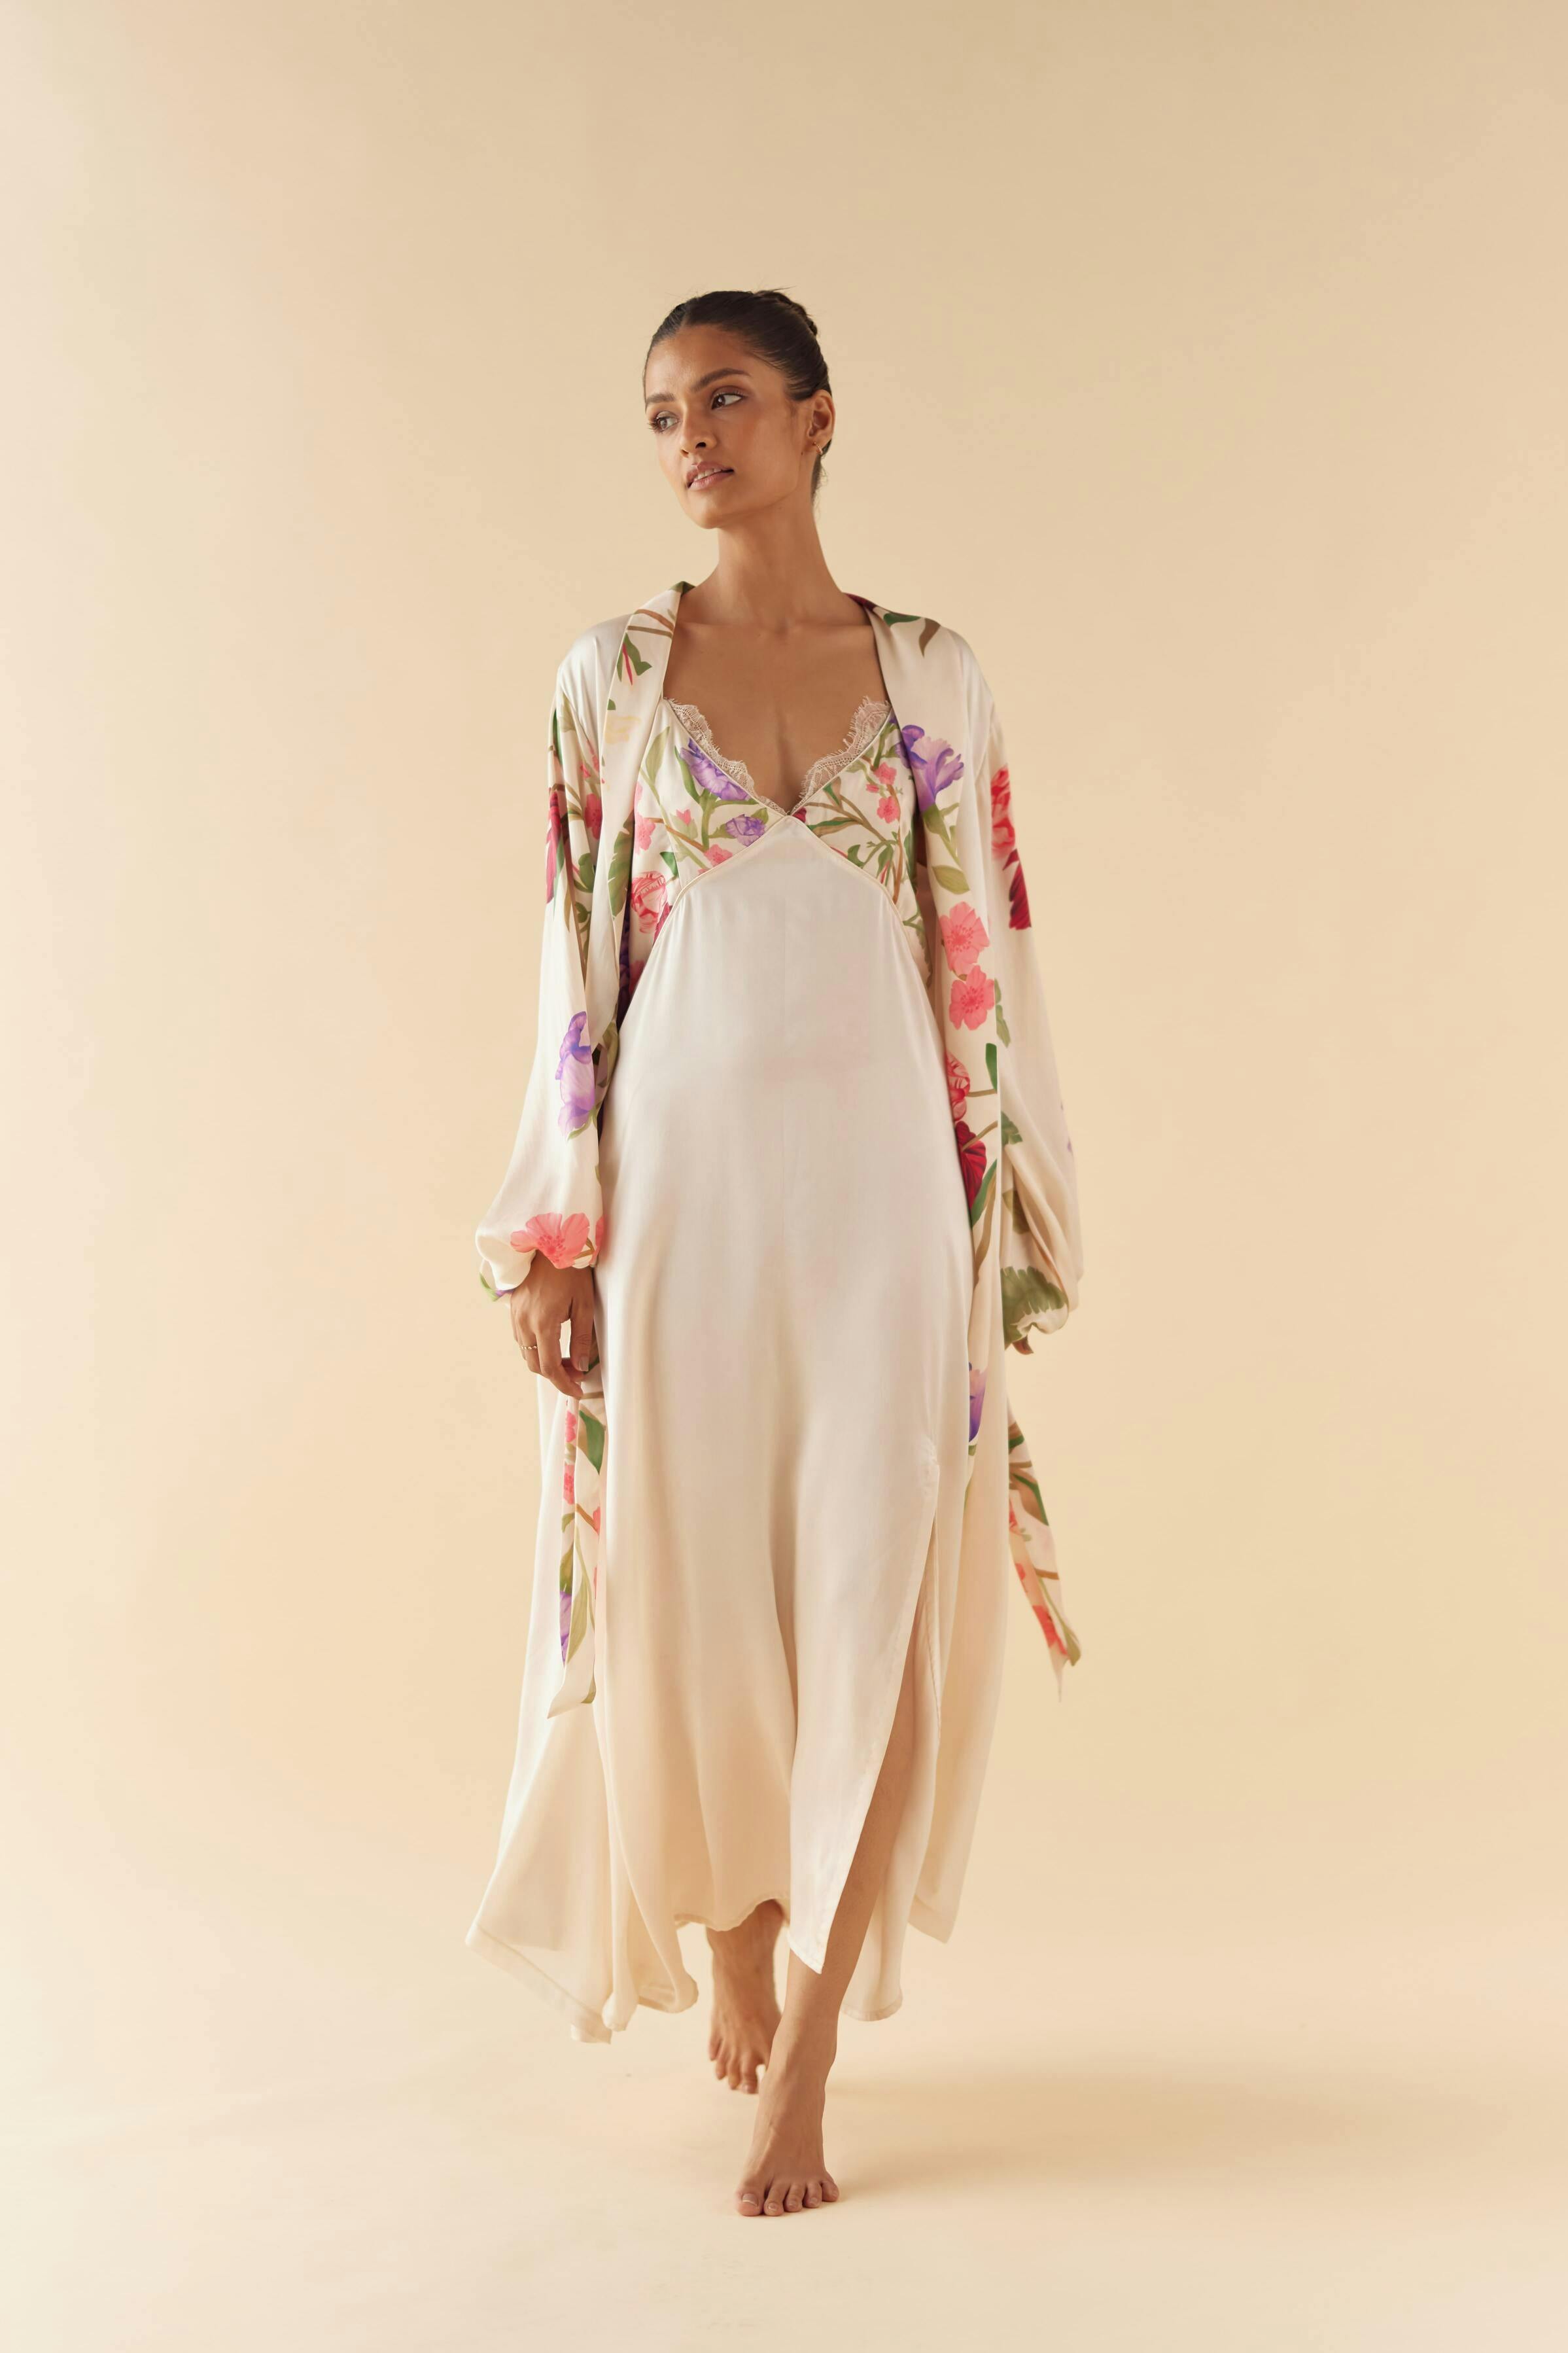 Thumbnail preview #1 for Floral Dream Silk Robe & Slip Set - Full Length